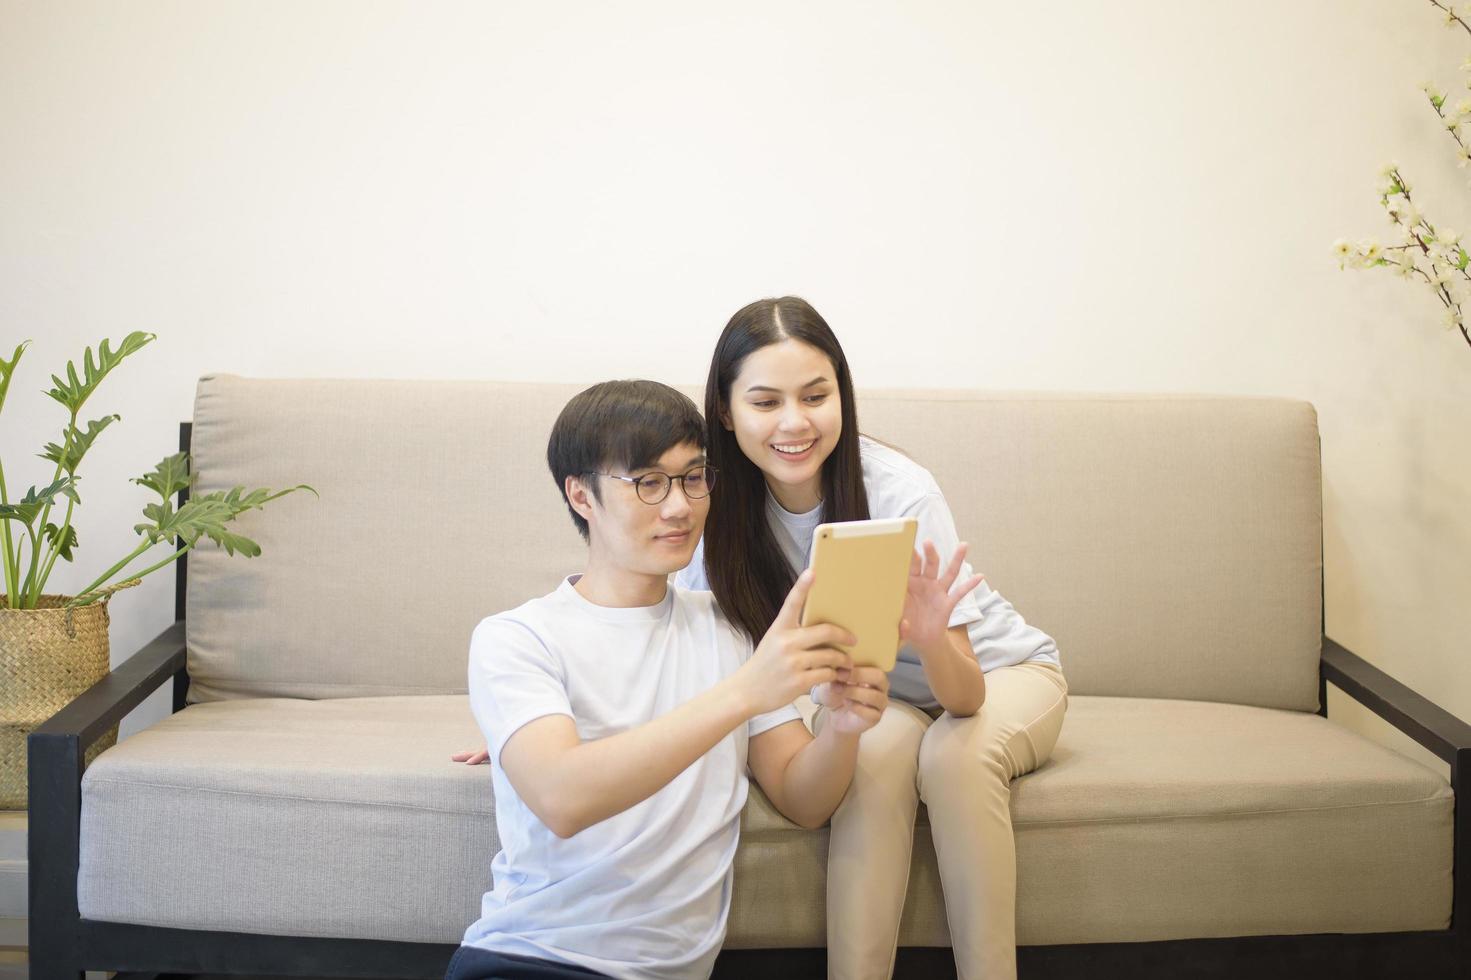 un couple heureux portant une chemise bleue se détend et tient une tablette sur un canapé à la maison photo